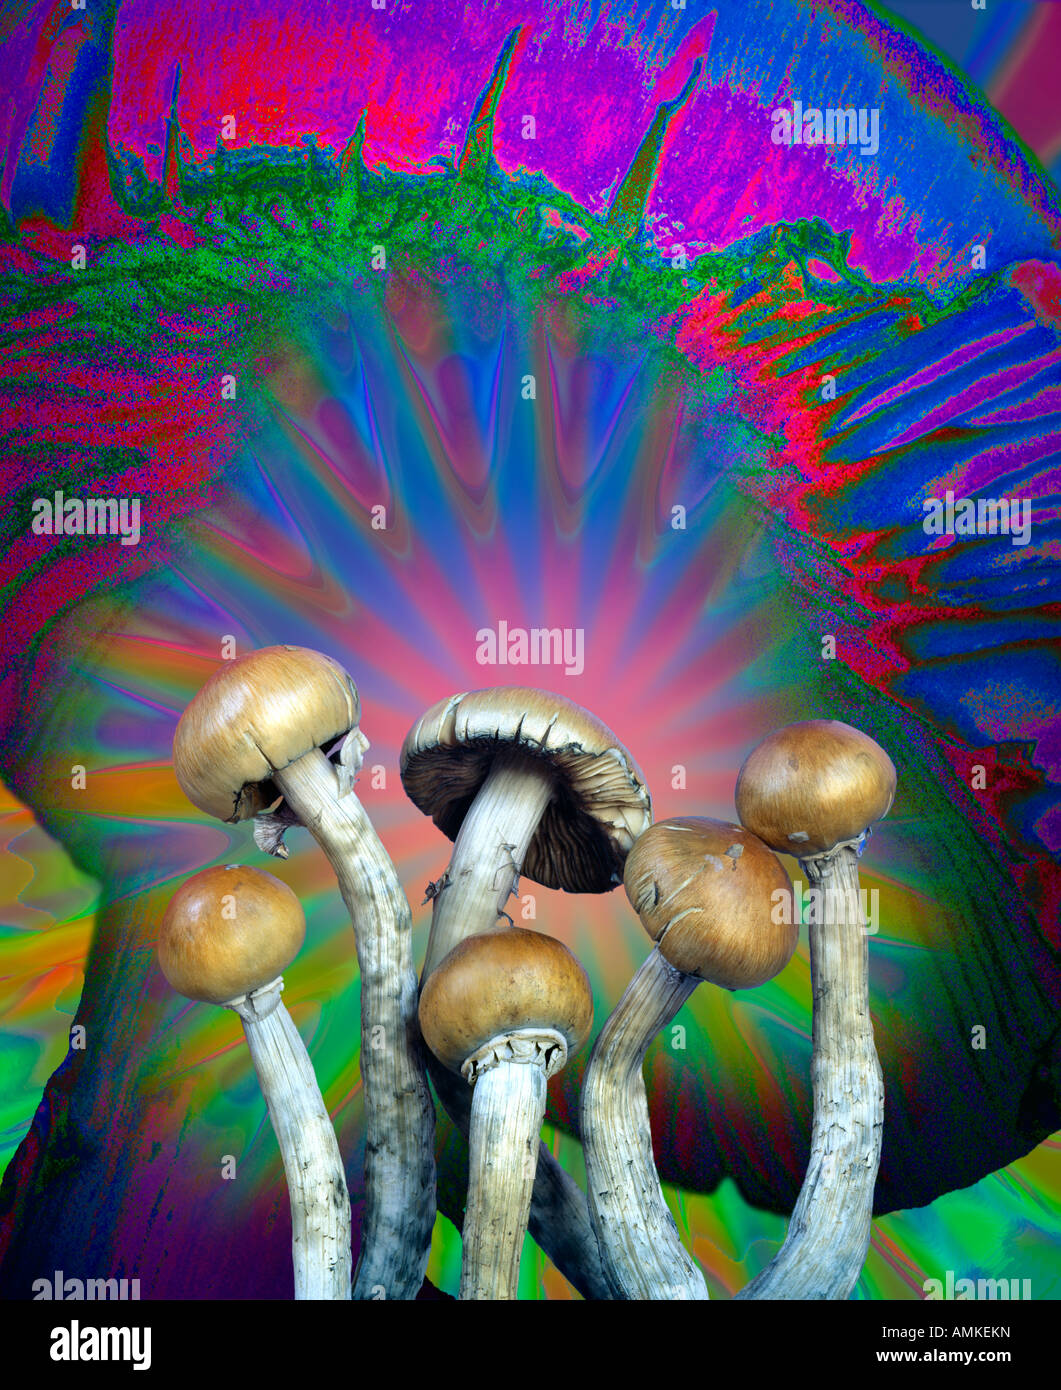 Una fotografia di diversi allucinogeni funghi magici contro un manipolato digitalmente versione ingrandita di un tappo a fungo Foto Stock